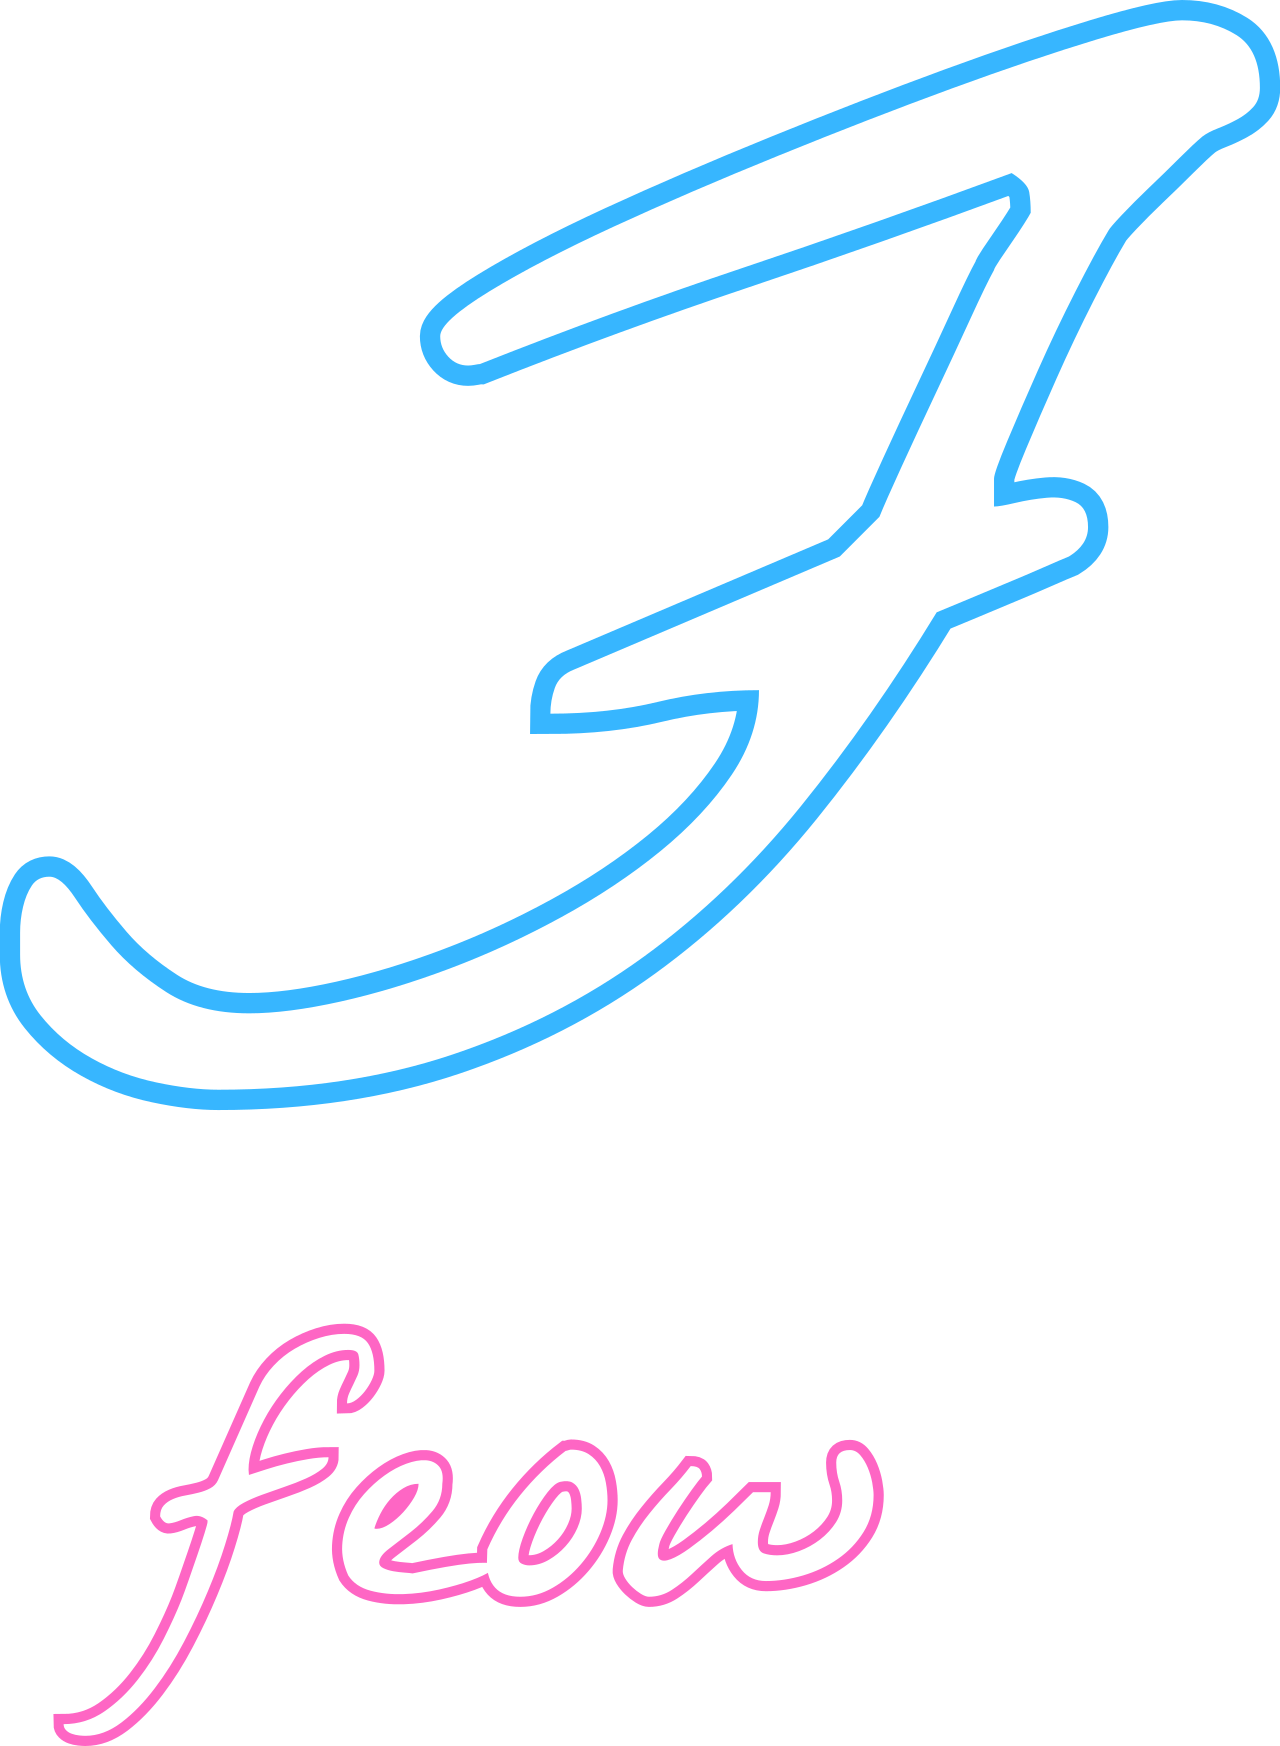 feow's logo